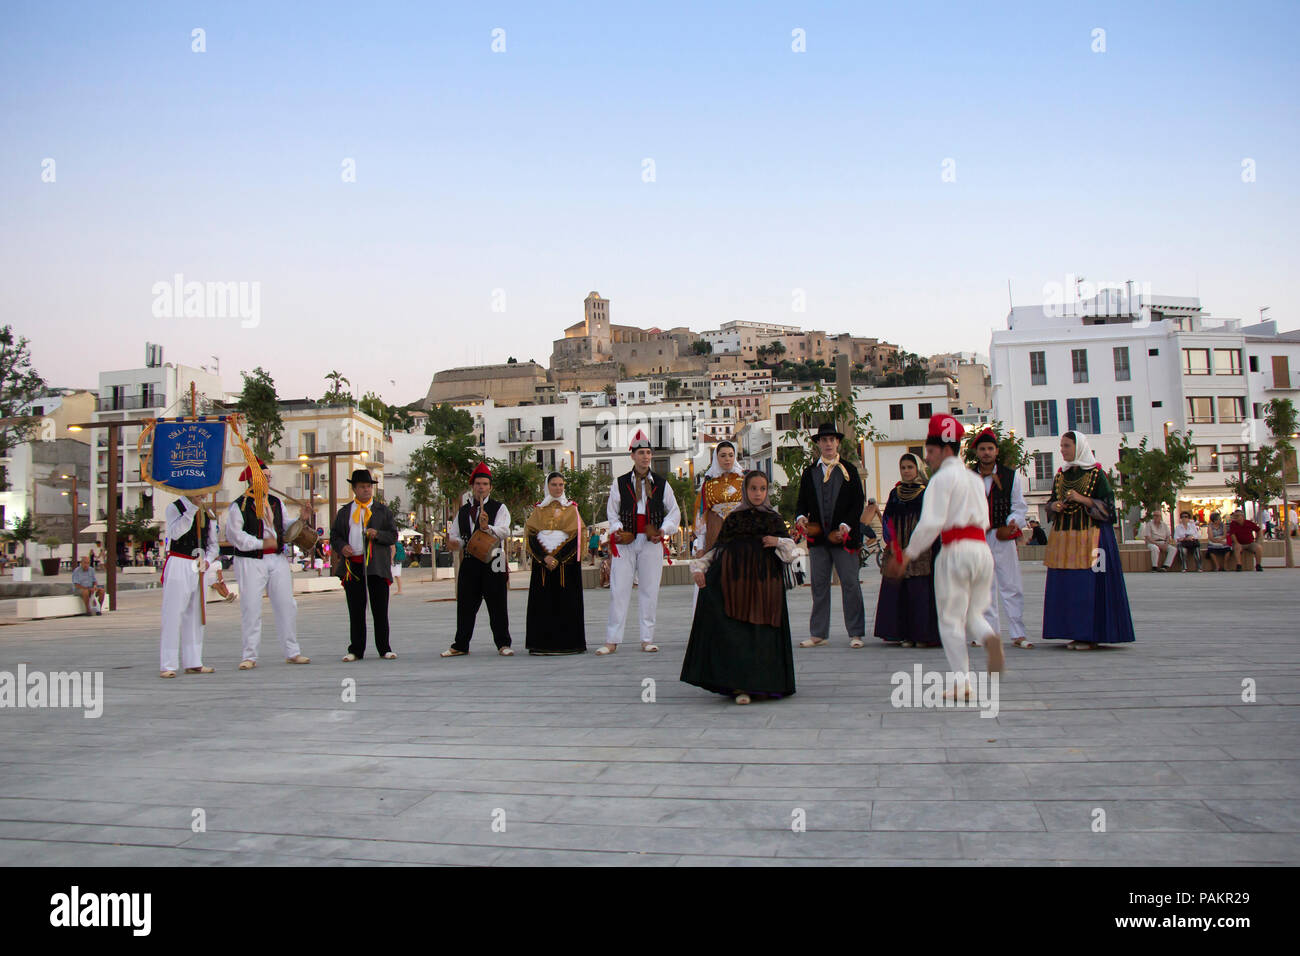 IBIZA/Spanien - 23. Juni: Folklore Gruppe führt den traditionellen Tanz in traditionellen Kostümen am 23. Juni 2017 in Ibiza, Spanien Stockfoto